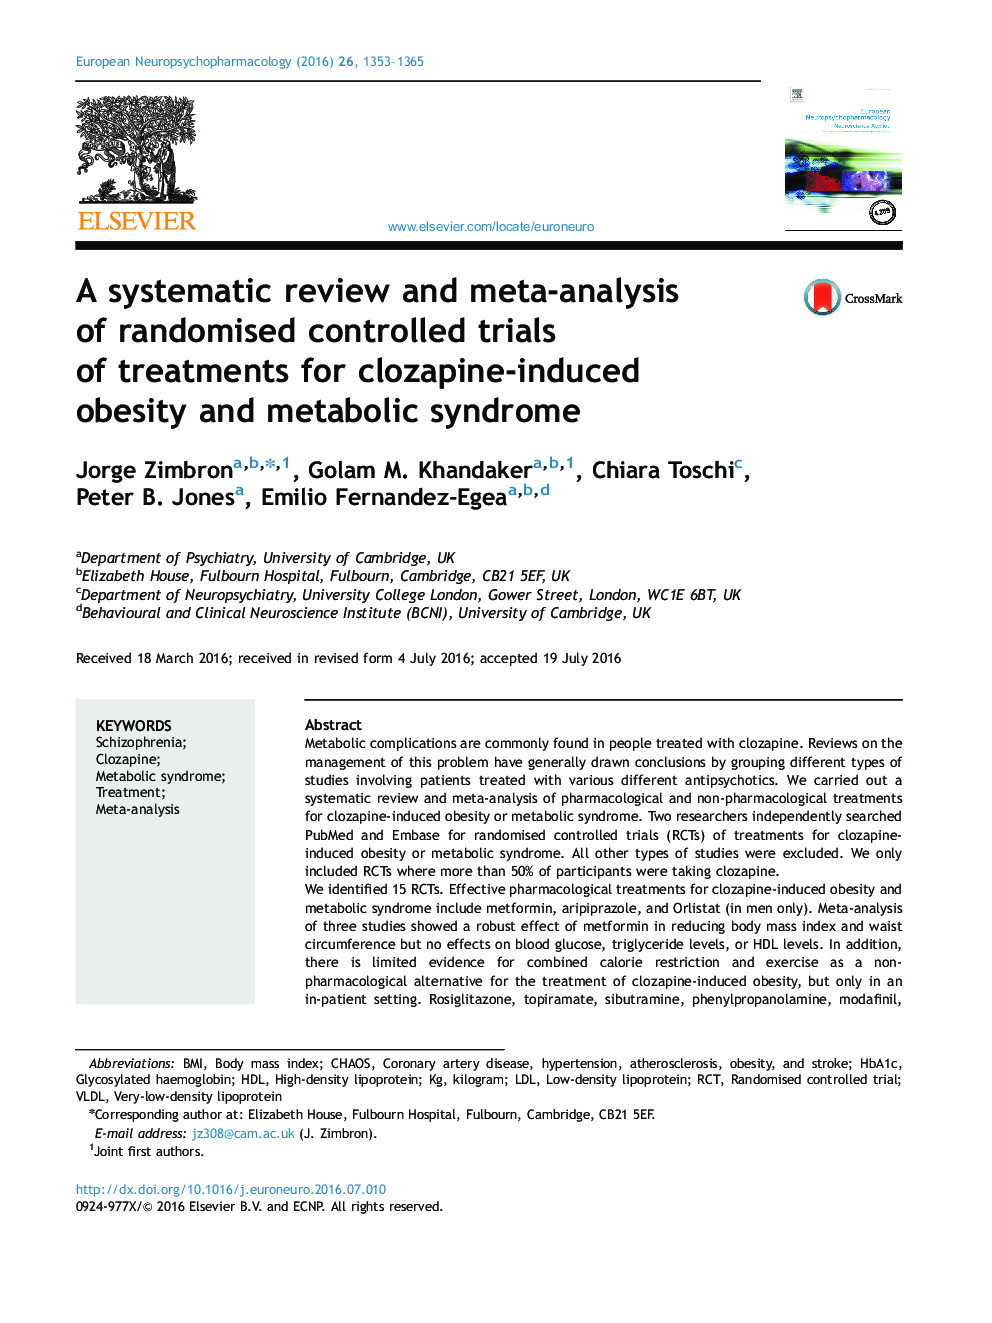 یک بررسی سیستماتیک و متاآنالیز آزمایشهای کنترل شده تصادفی درمانهای چاقی ناشی از کلوزاپین و سندرم متابولیک 